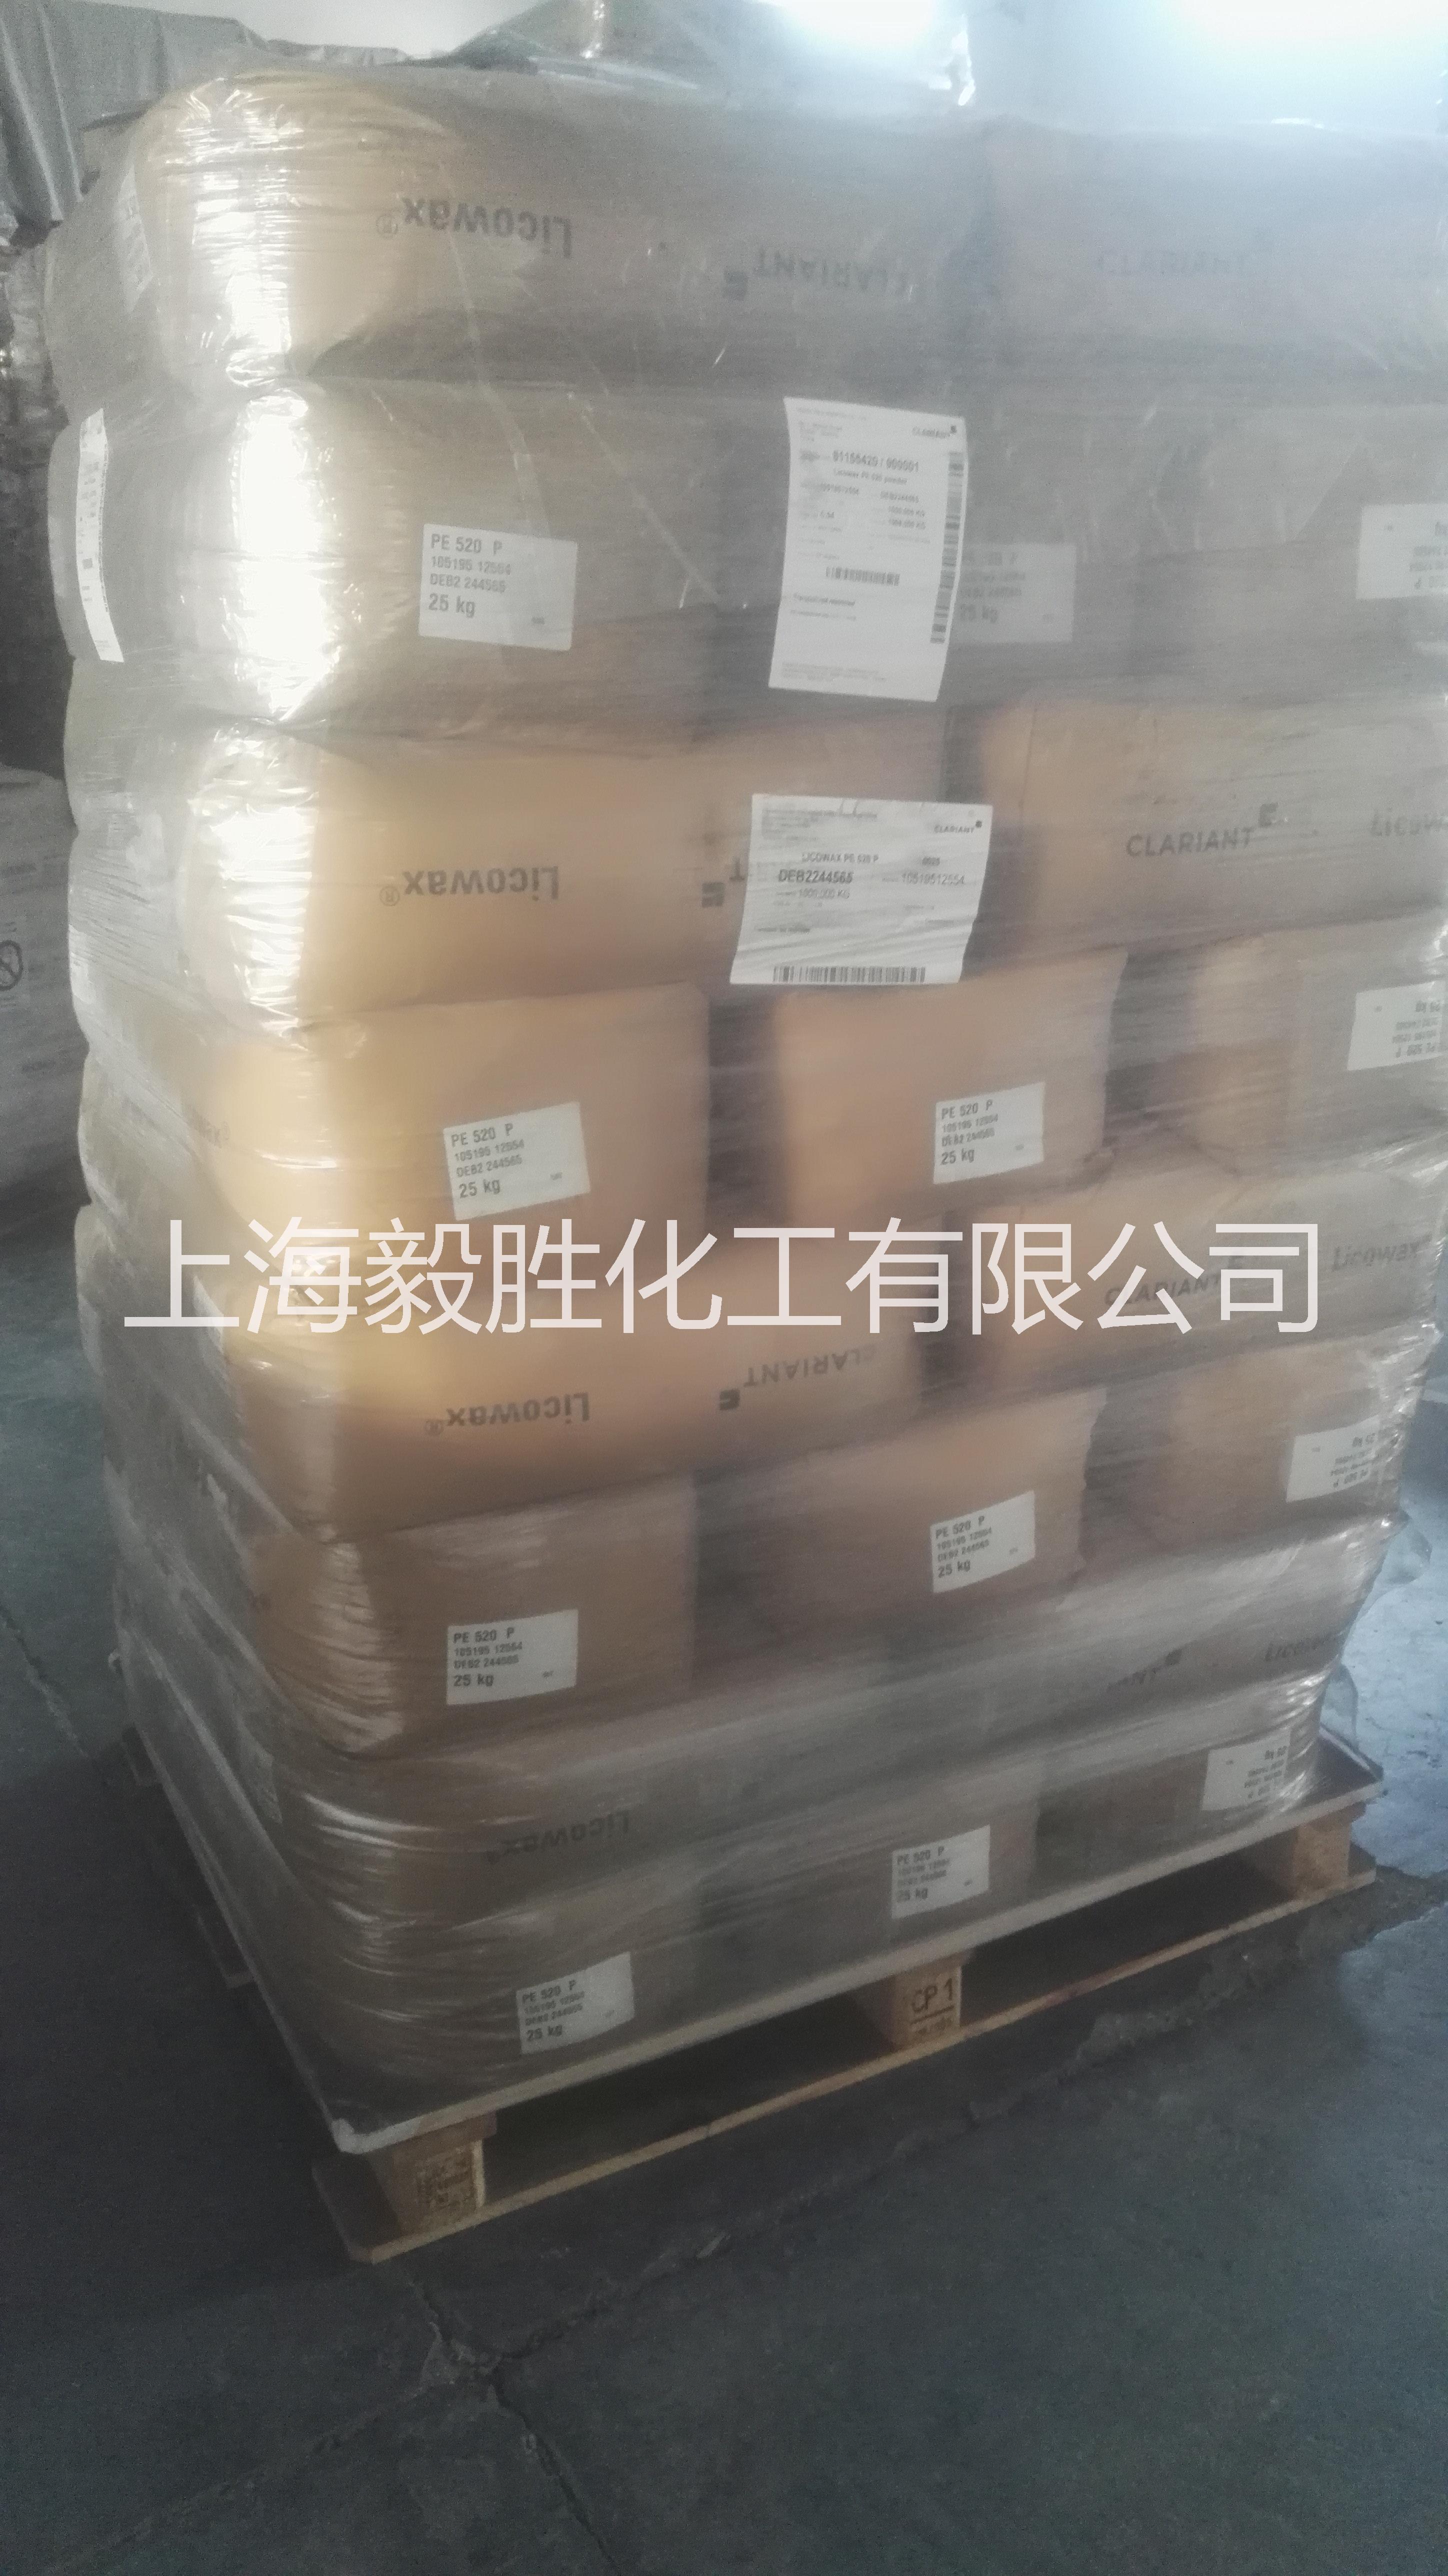 上海市代理高熔点聚乙烯蜡PE520厂家供应科莱恩聚乙烯蜡PE520  代理高熔点聚乙烯蜡PE520